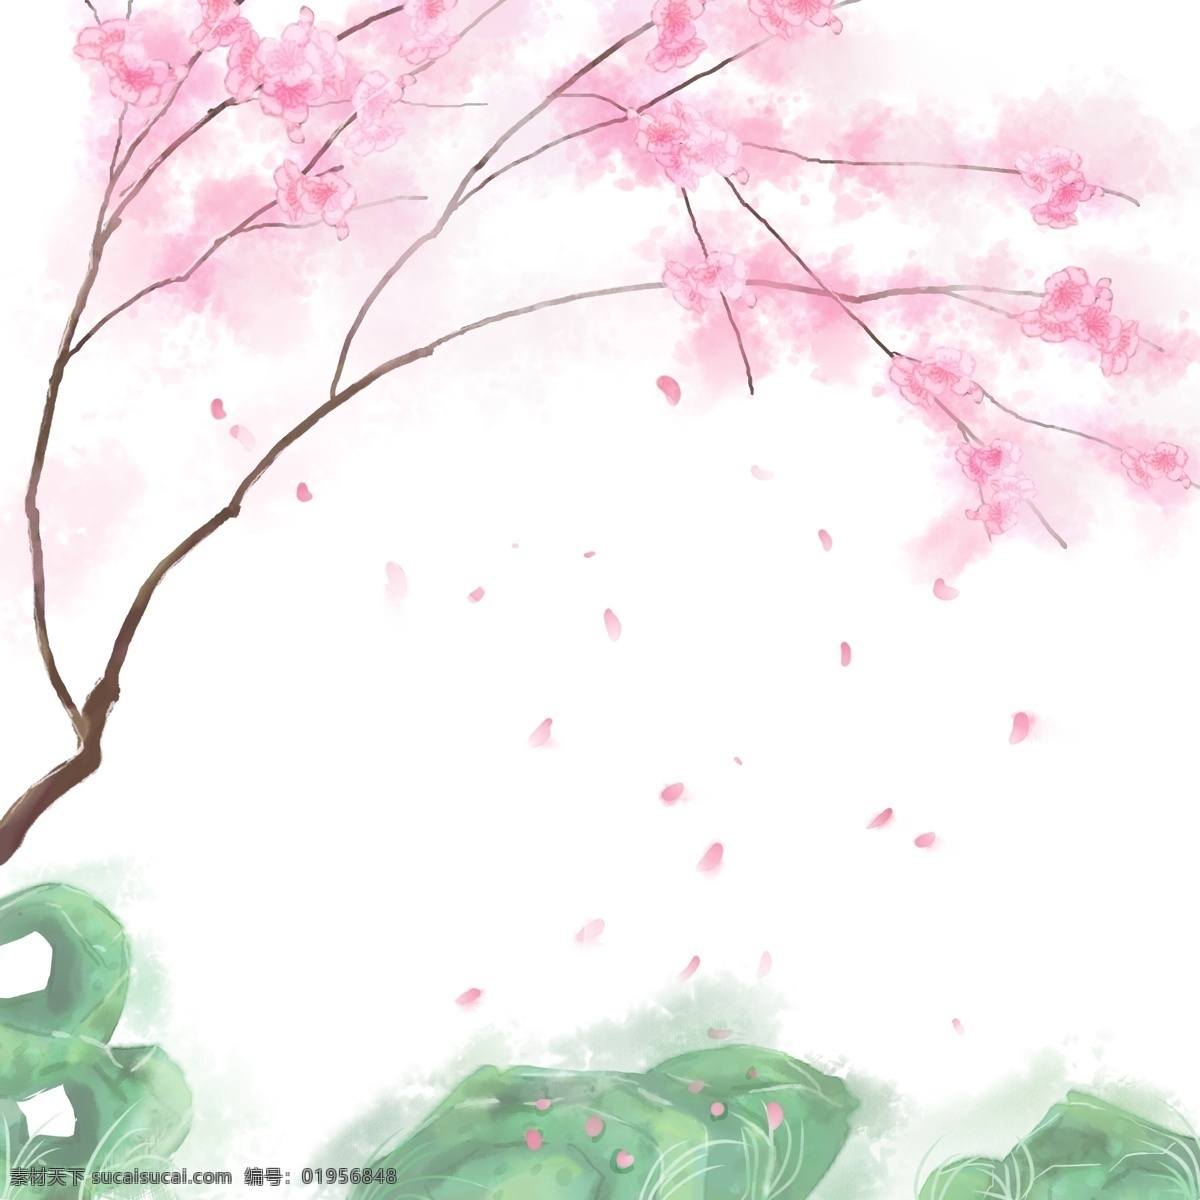 卡通 手绘 中国 风 粉红色 花 石头 卡通手绘 中国风 水彩 水墨 唯美 小清新 粉红色花 树 树枝 飘落 花瓣